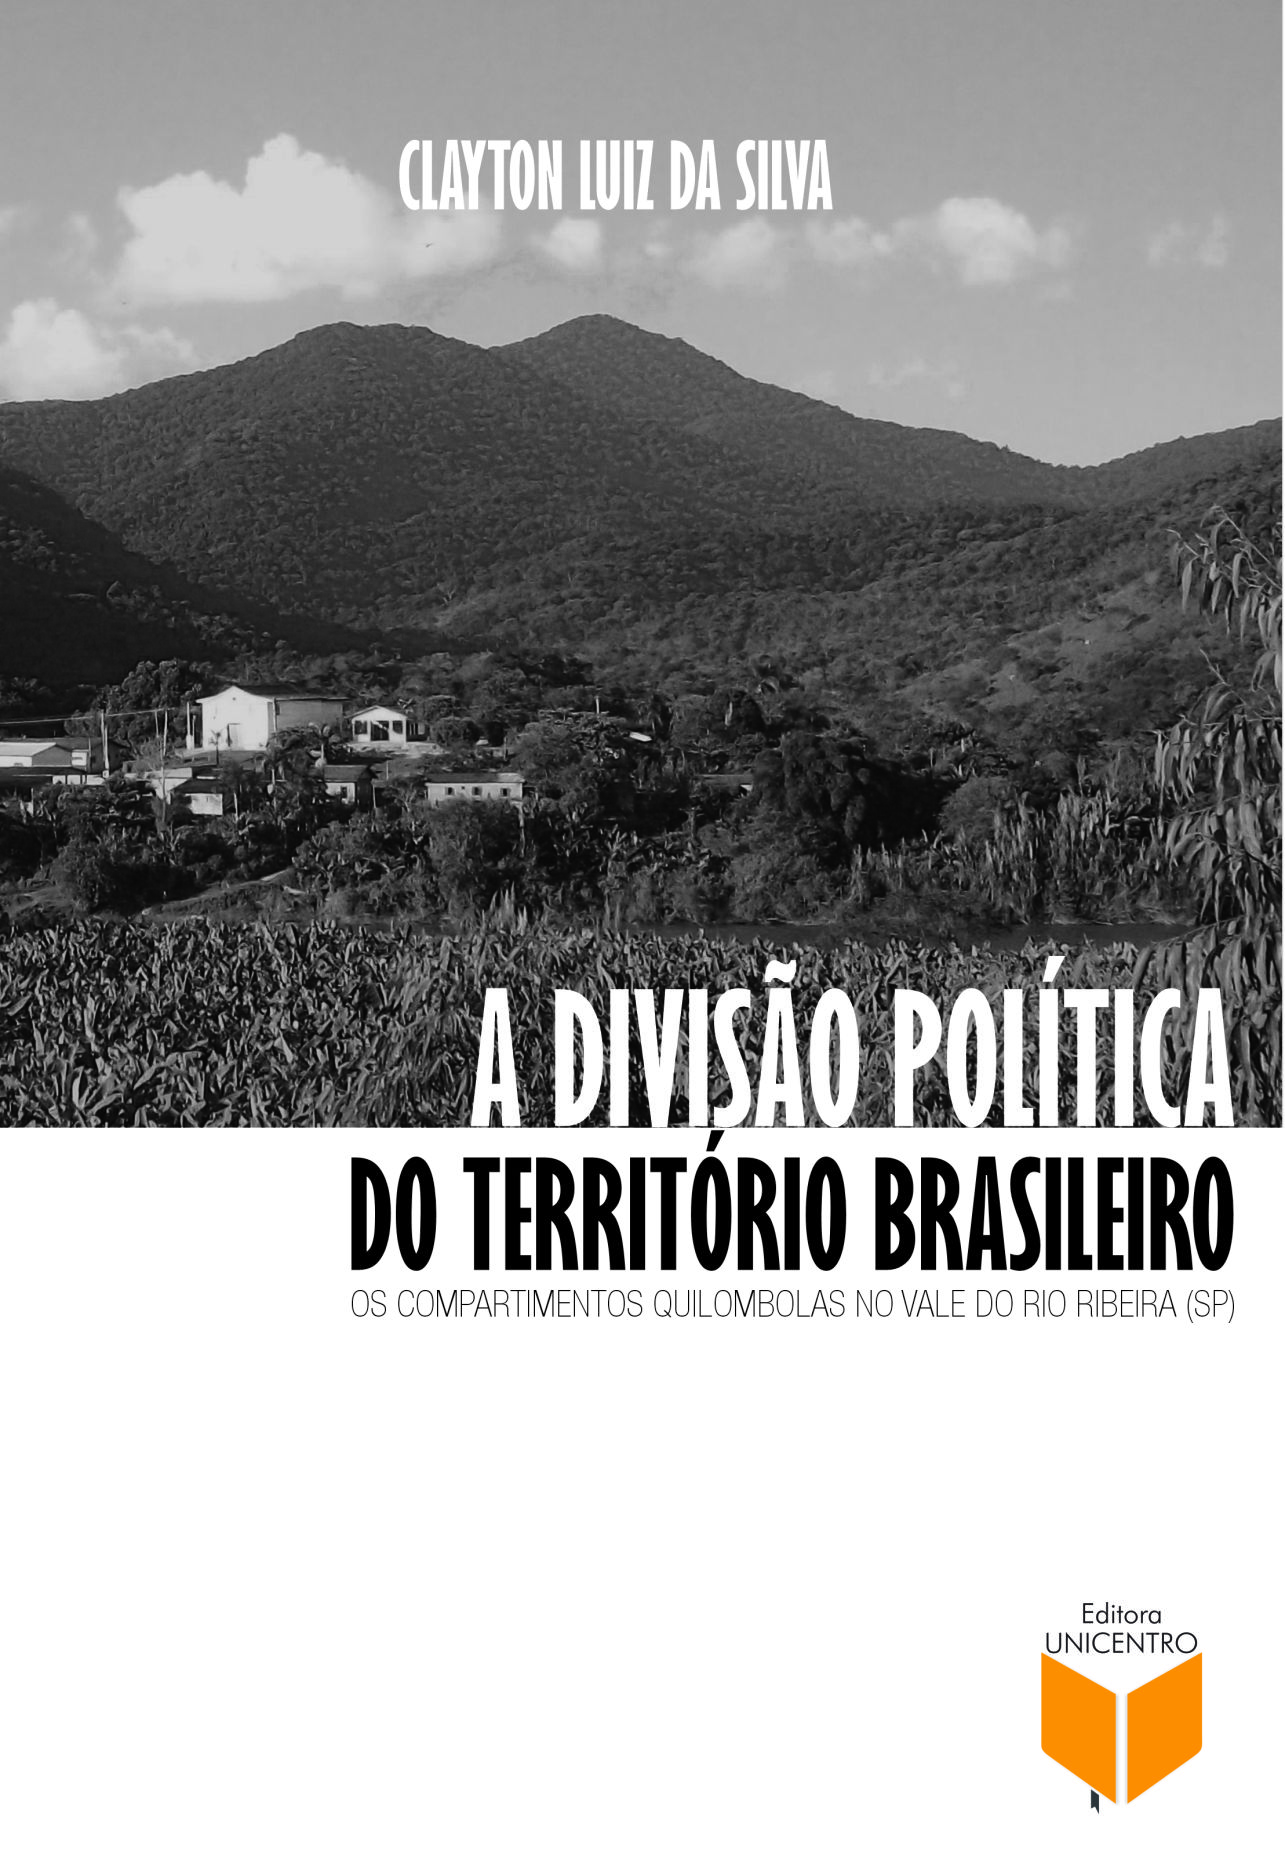 A diviso poltica do territrio brasileiro